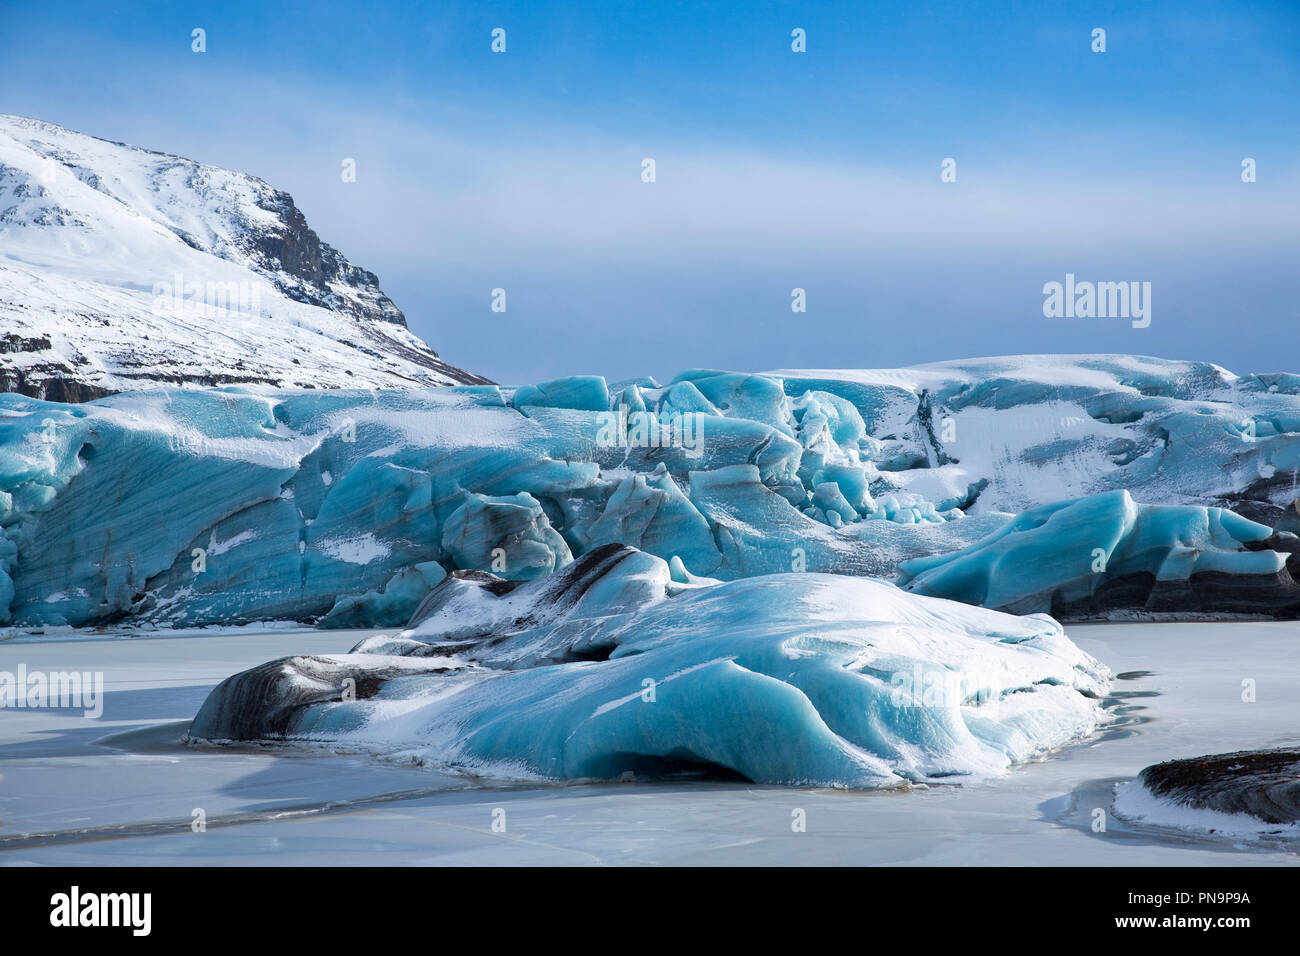 Blocs de glace des langues glaciaires du glacier Svinafellsjokull glacier de Vatnajokull un débouché, la plus grande calotte glaciaire de l'Europe, le sud de l'Islande Banque D'Images